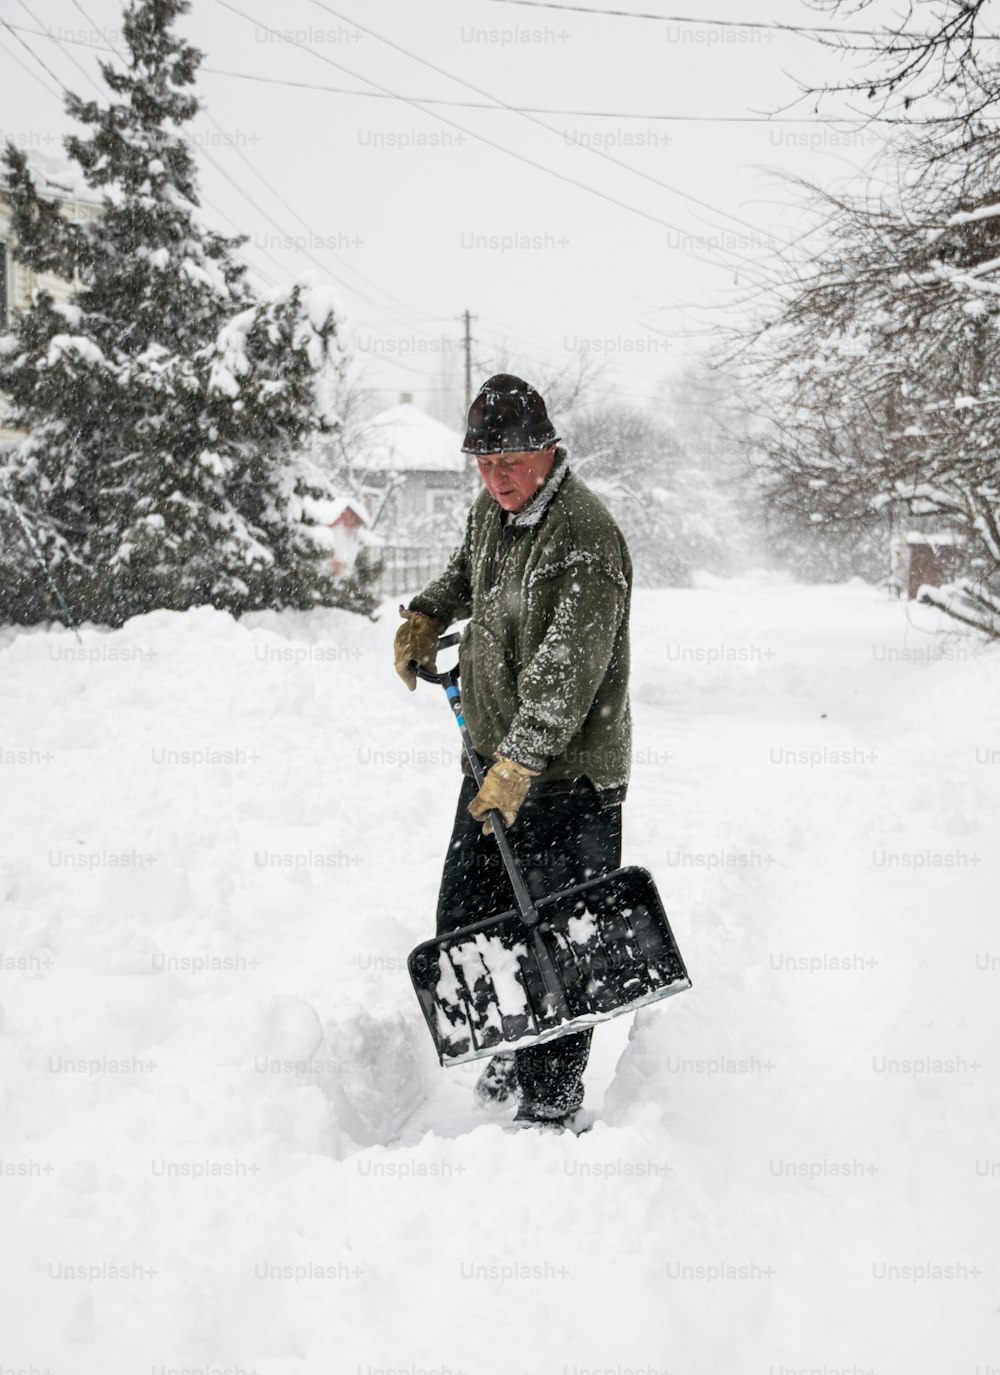 冬の除雪。大雪の中、雪かきで庭や私道を雪から除雪する男性